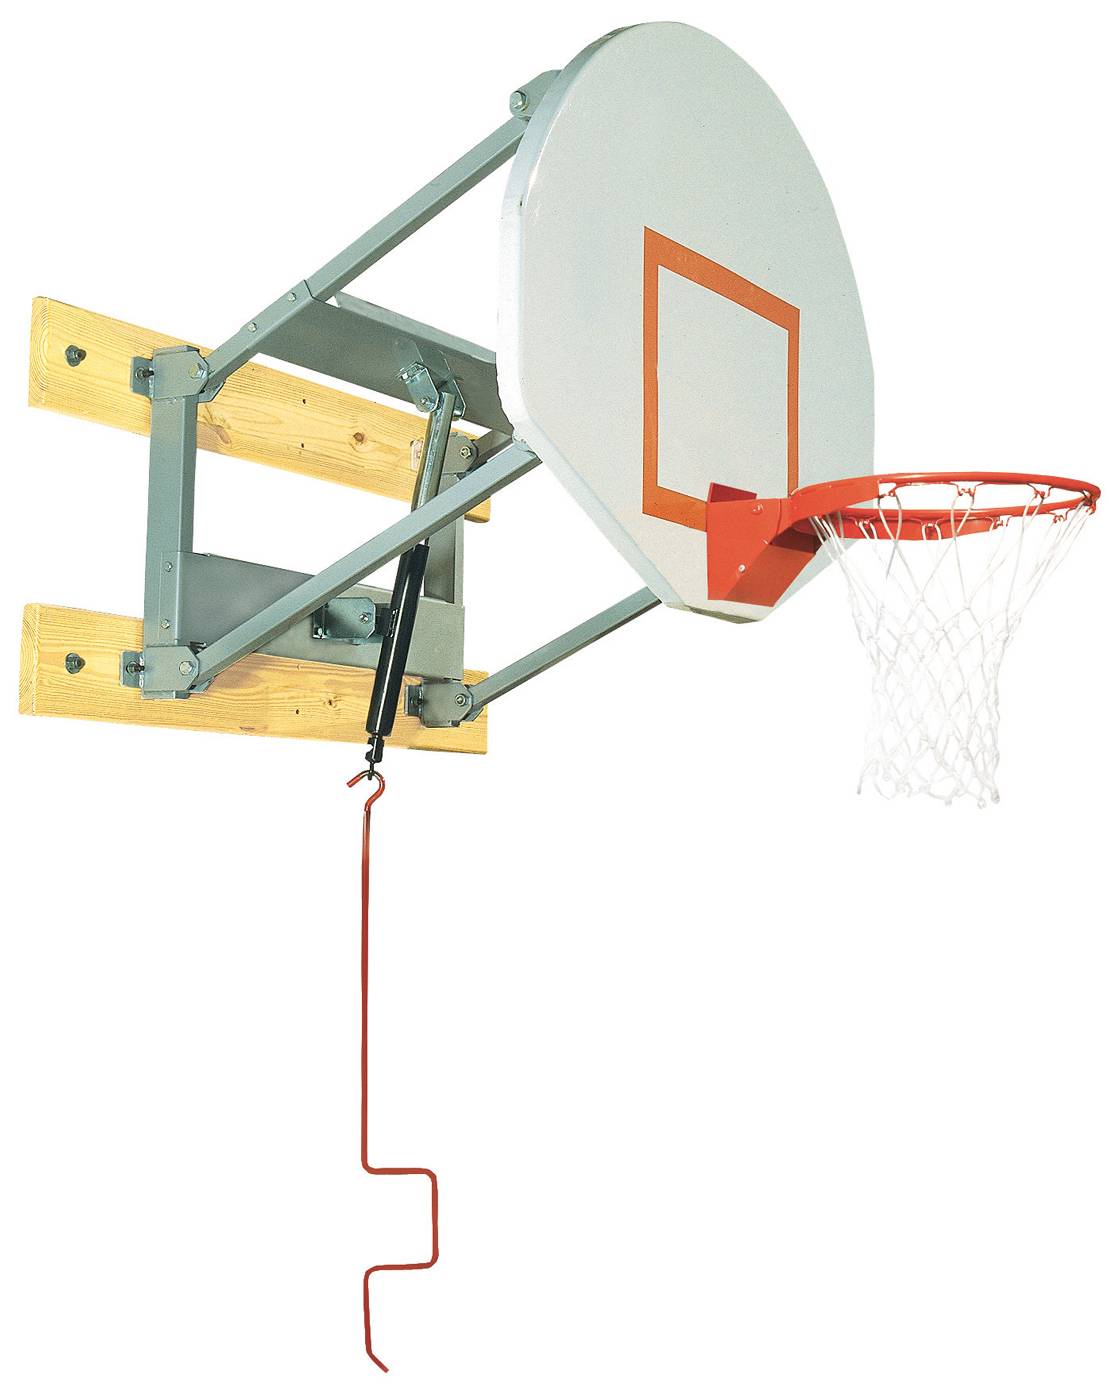 basketball hoop mounted